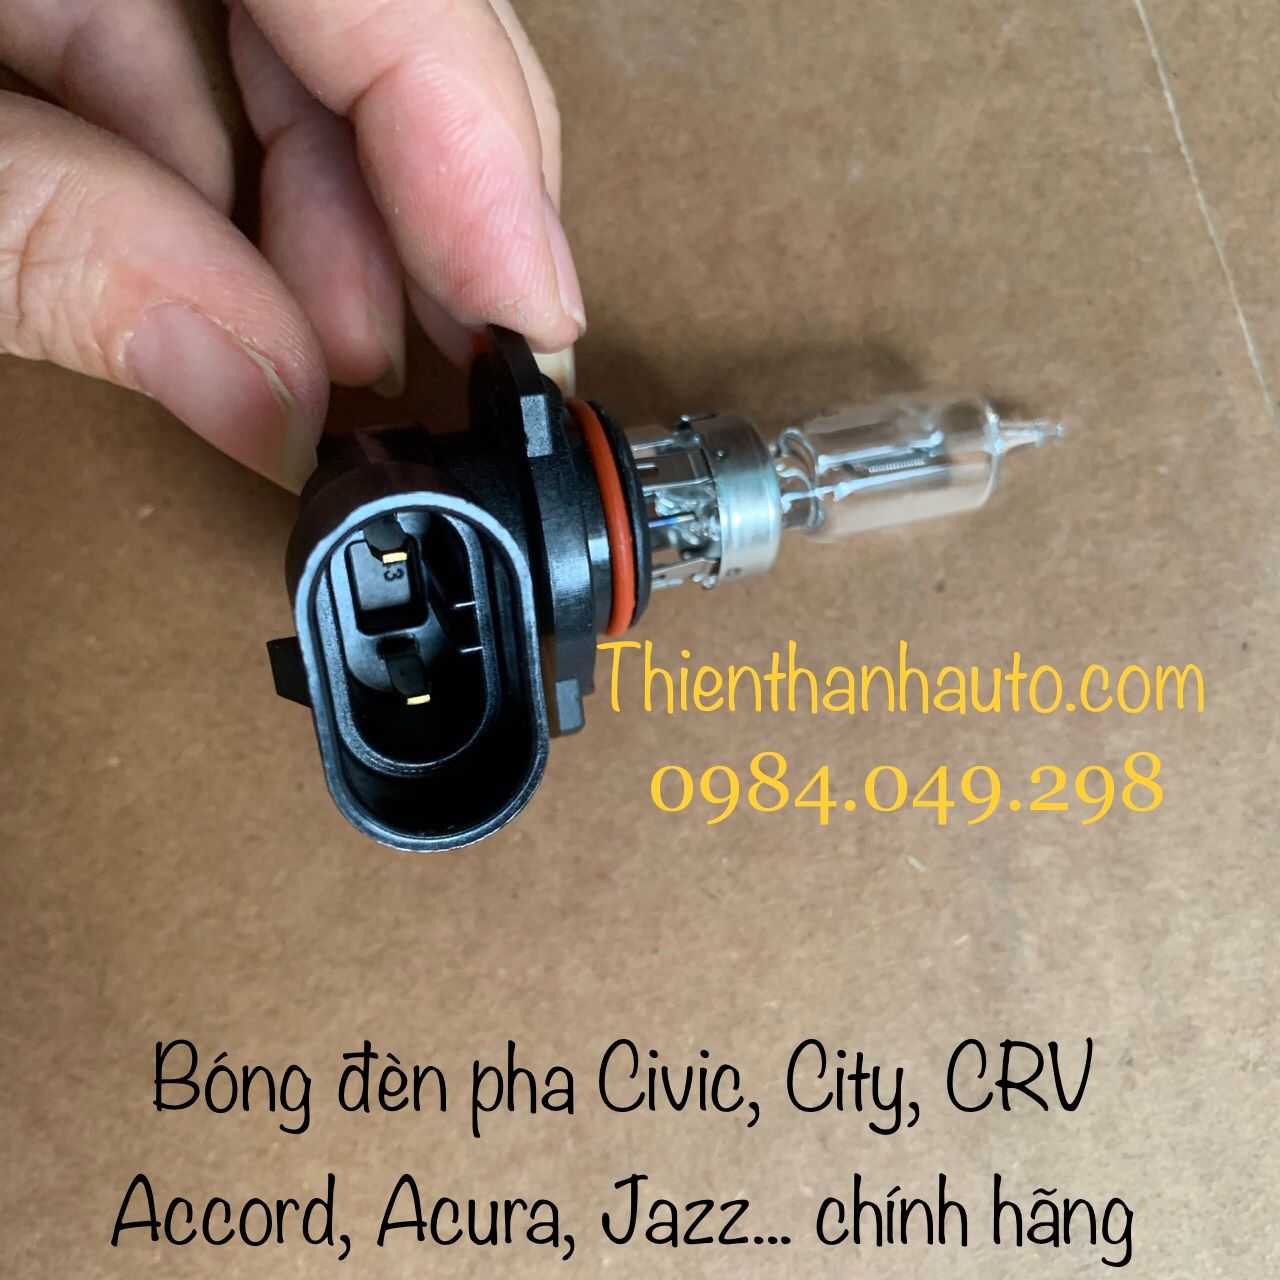 Bóng đèn pha Honda Civic, City, CRV, Accord, Acura, Jazz, Brio... chính hãng- Thienthanhauto.com